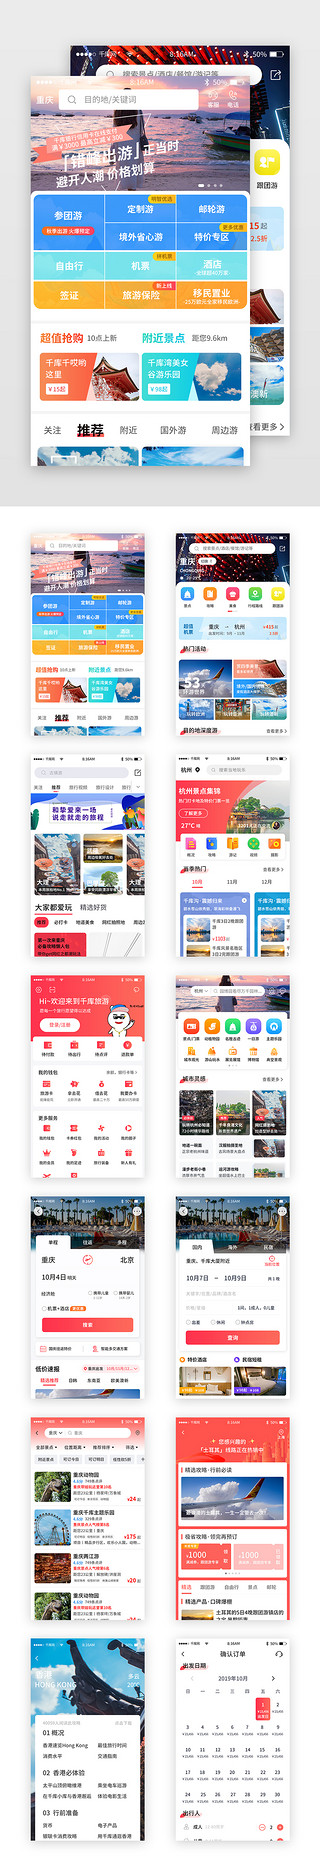 和你一起去旅行UI设计素材_红色简约旅游旅行app套图